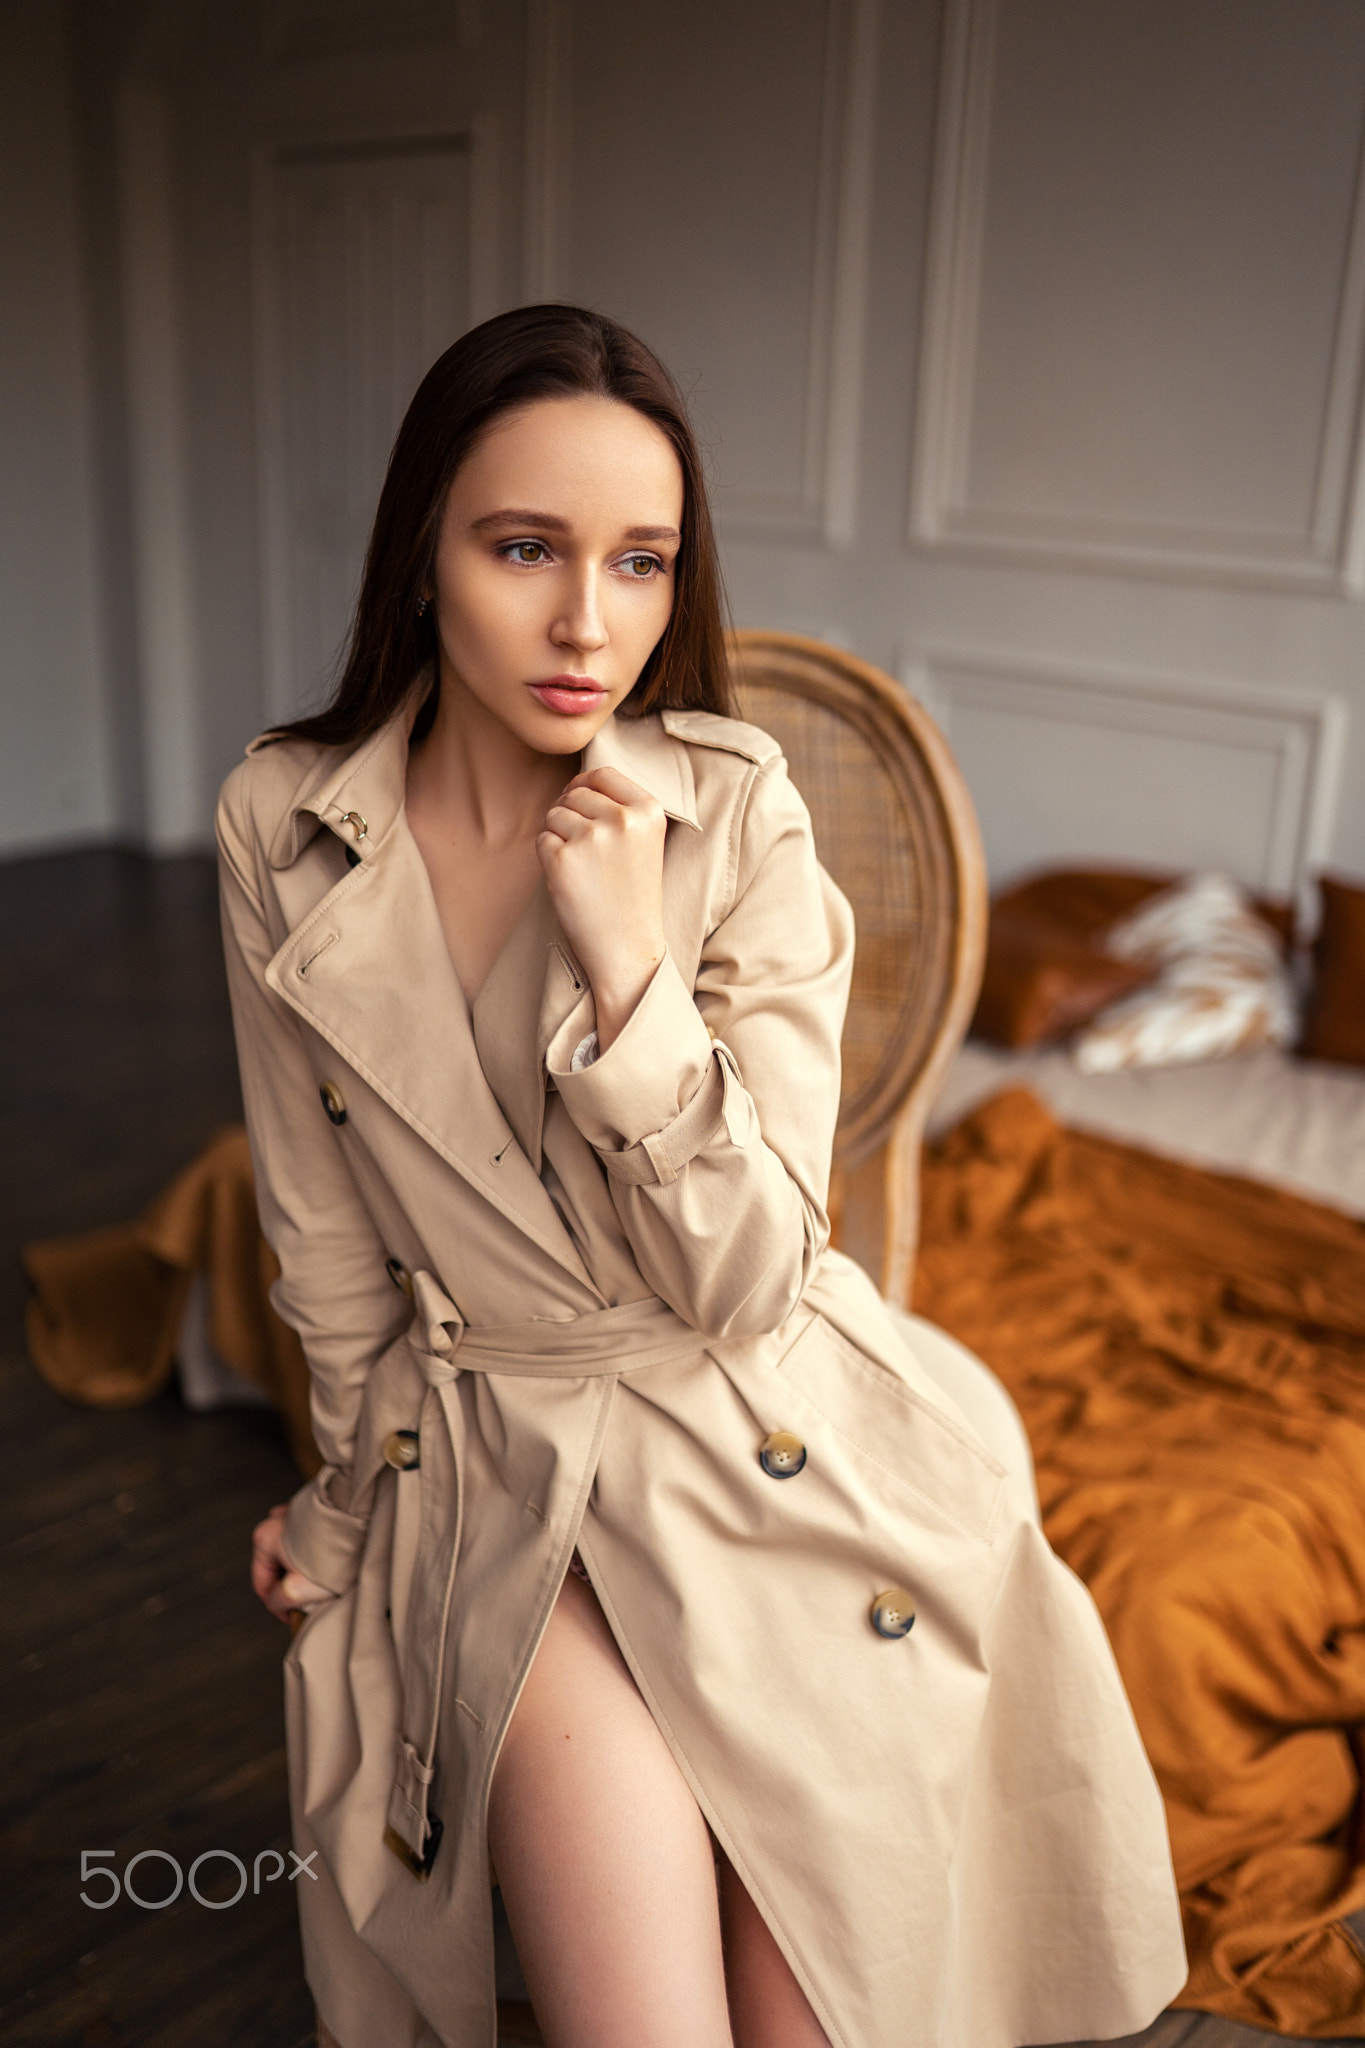 Sergey Shishlov Women Brunette Long Hair Straight Hair Looking Away Coats Brown Warm Bedroom 500px 1365x2048